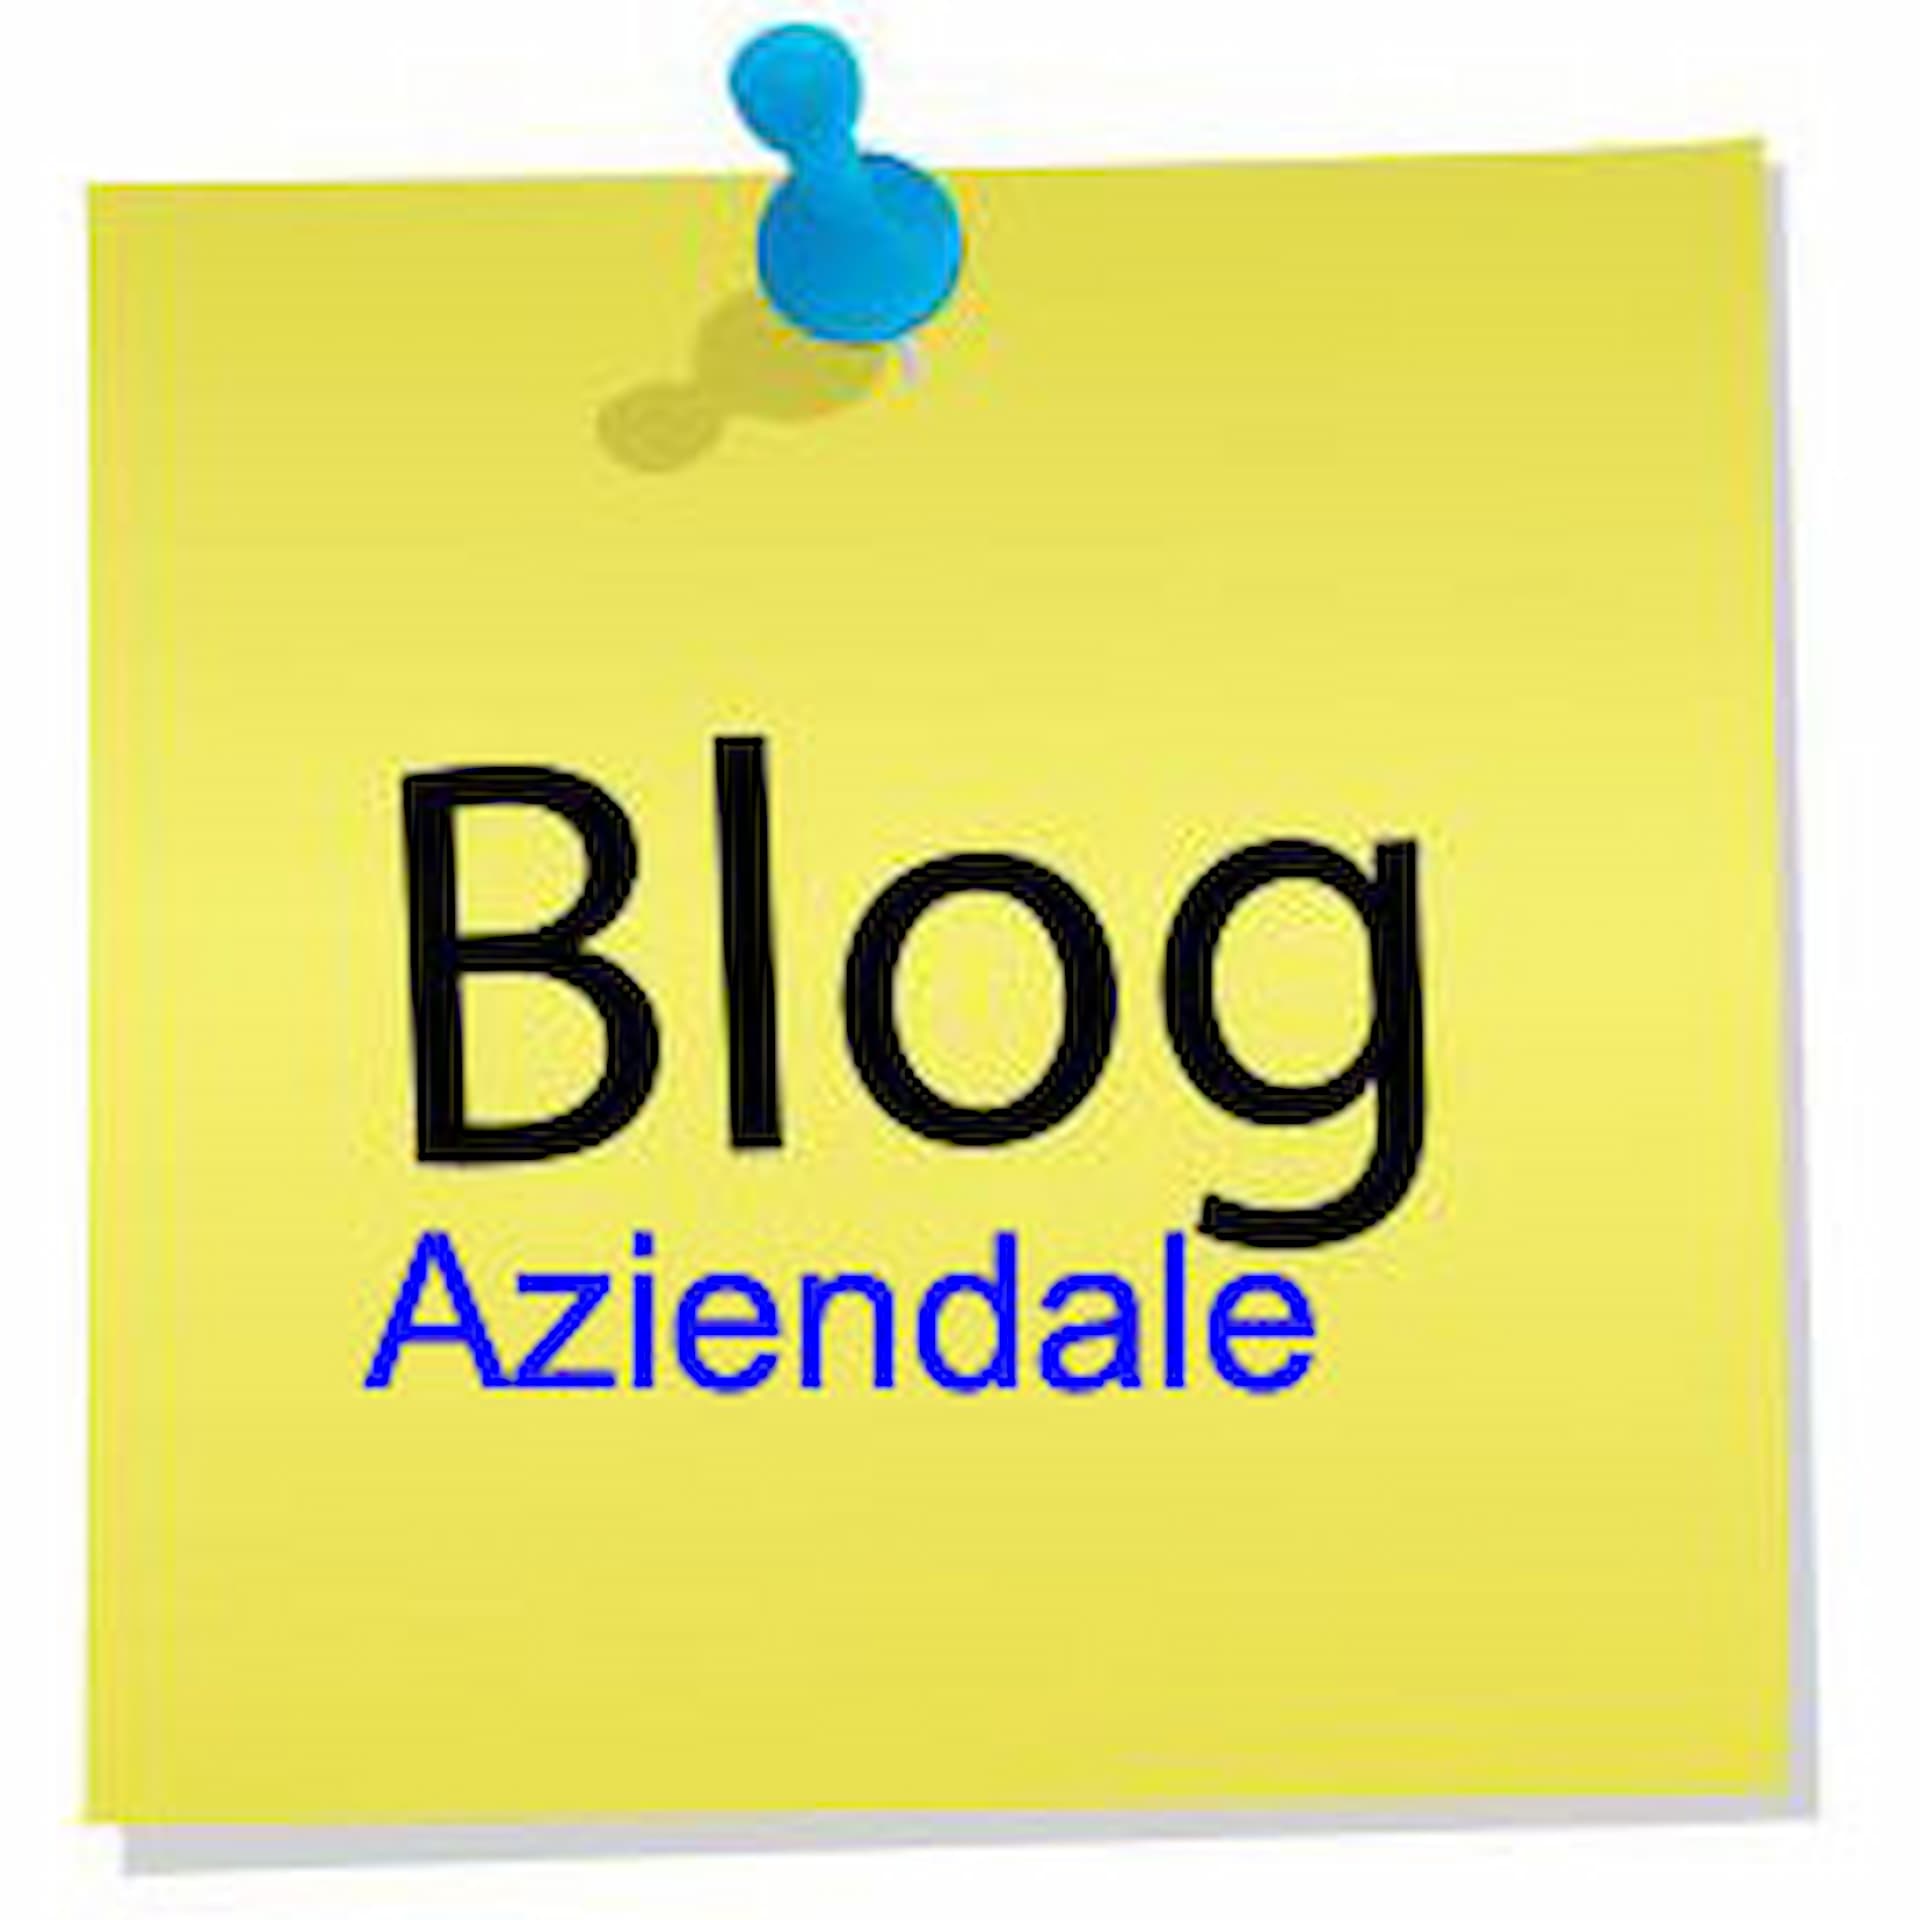 L’Importanza dei Blog Aziendali